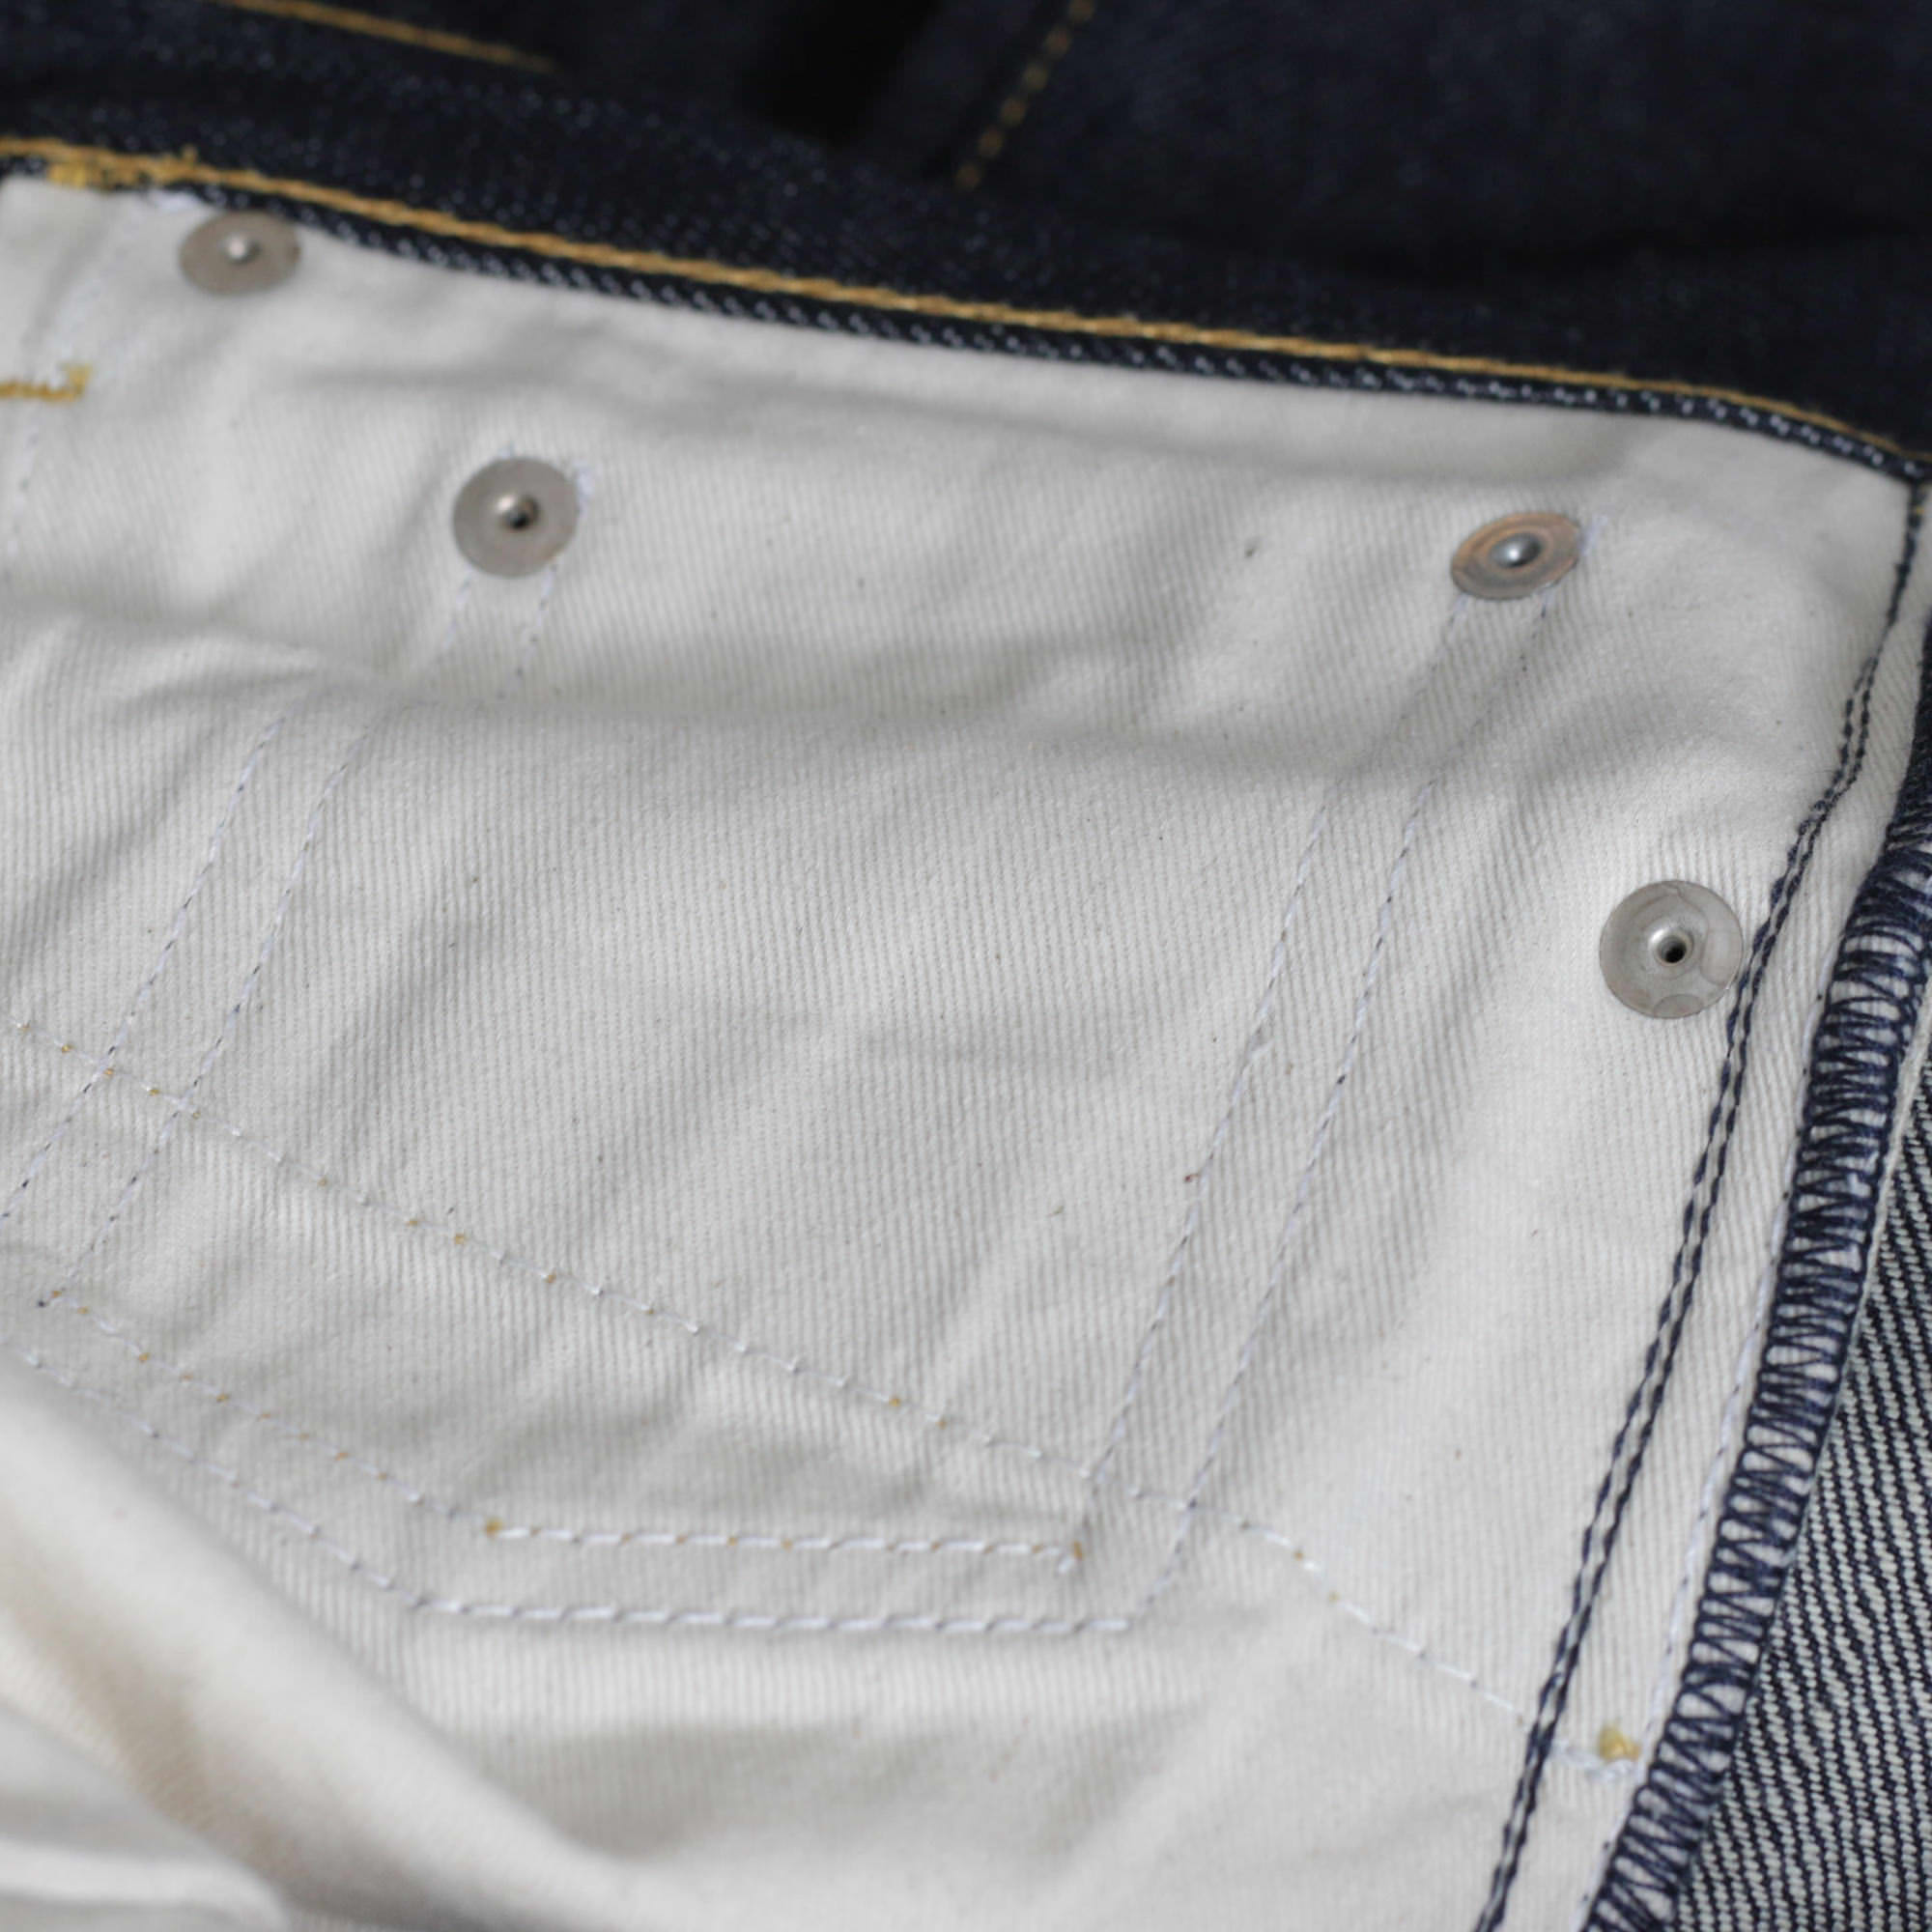 tissu interieur poches jean